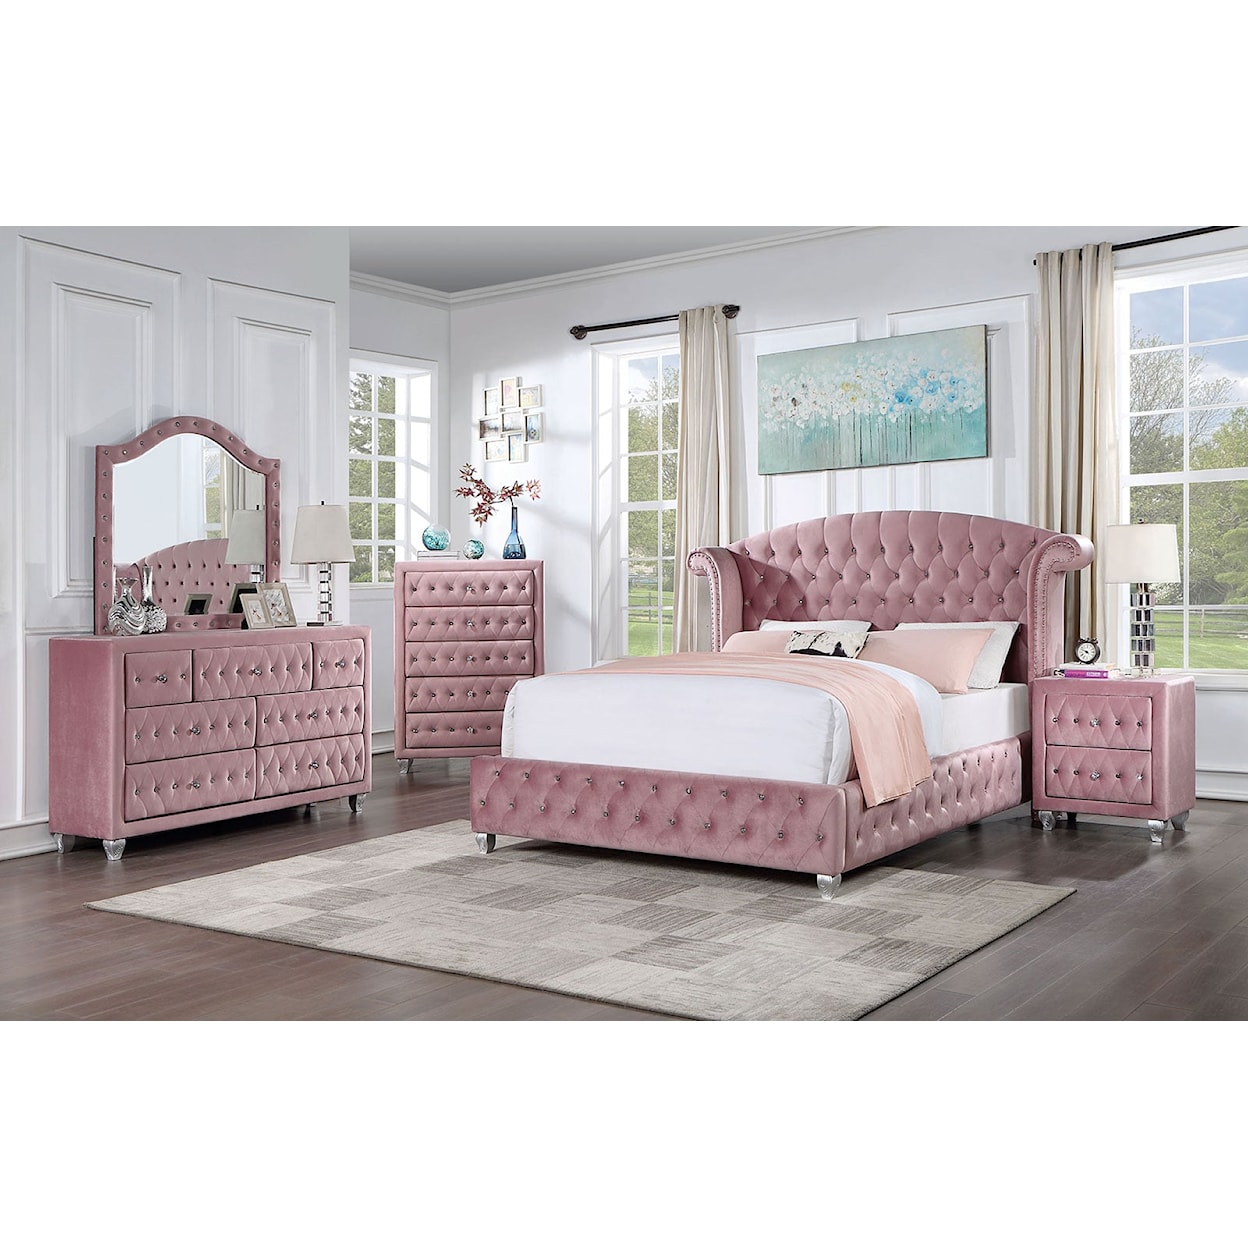 Furniture of America Zohar 4-Piece Queen Bedroom Set